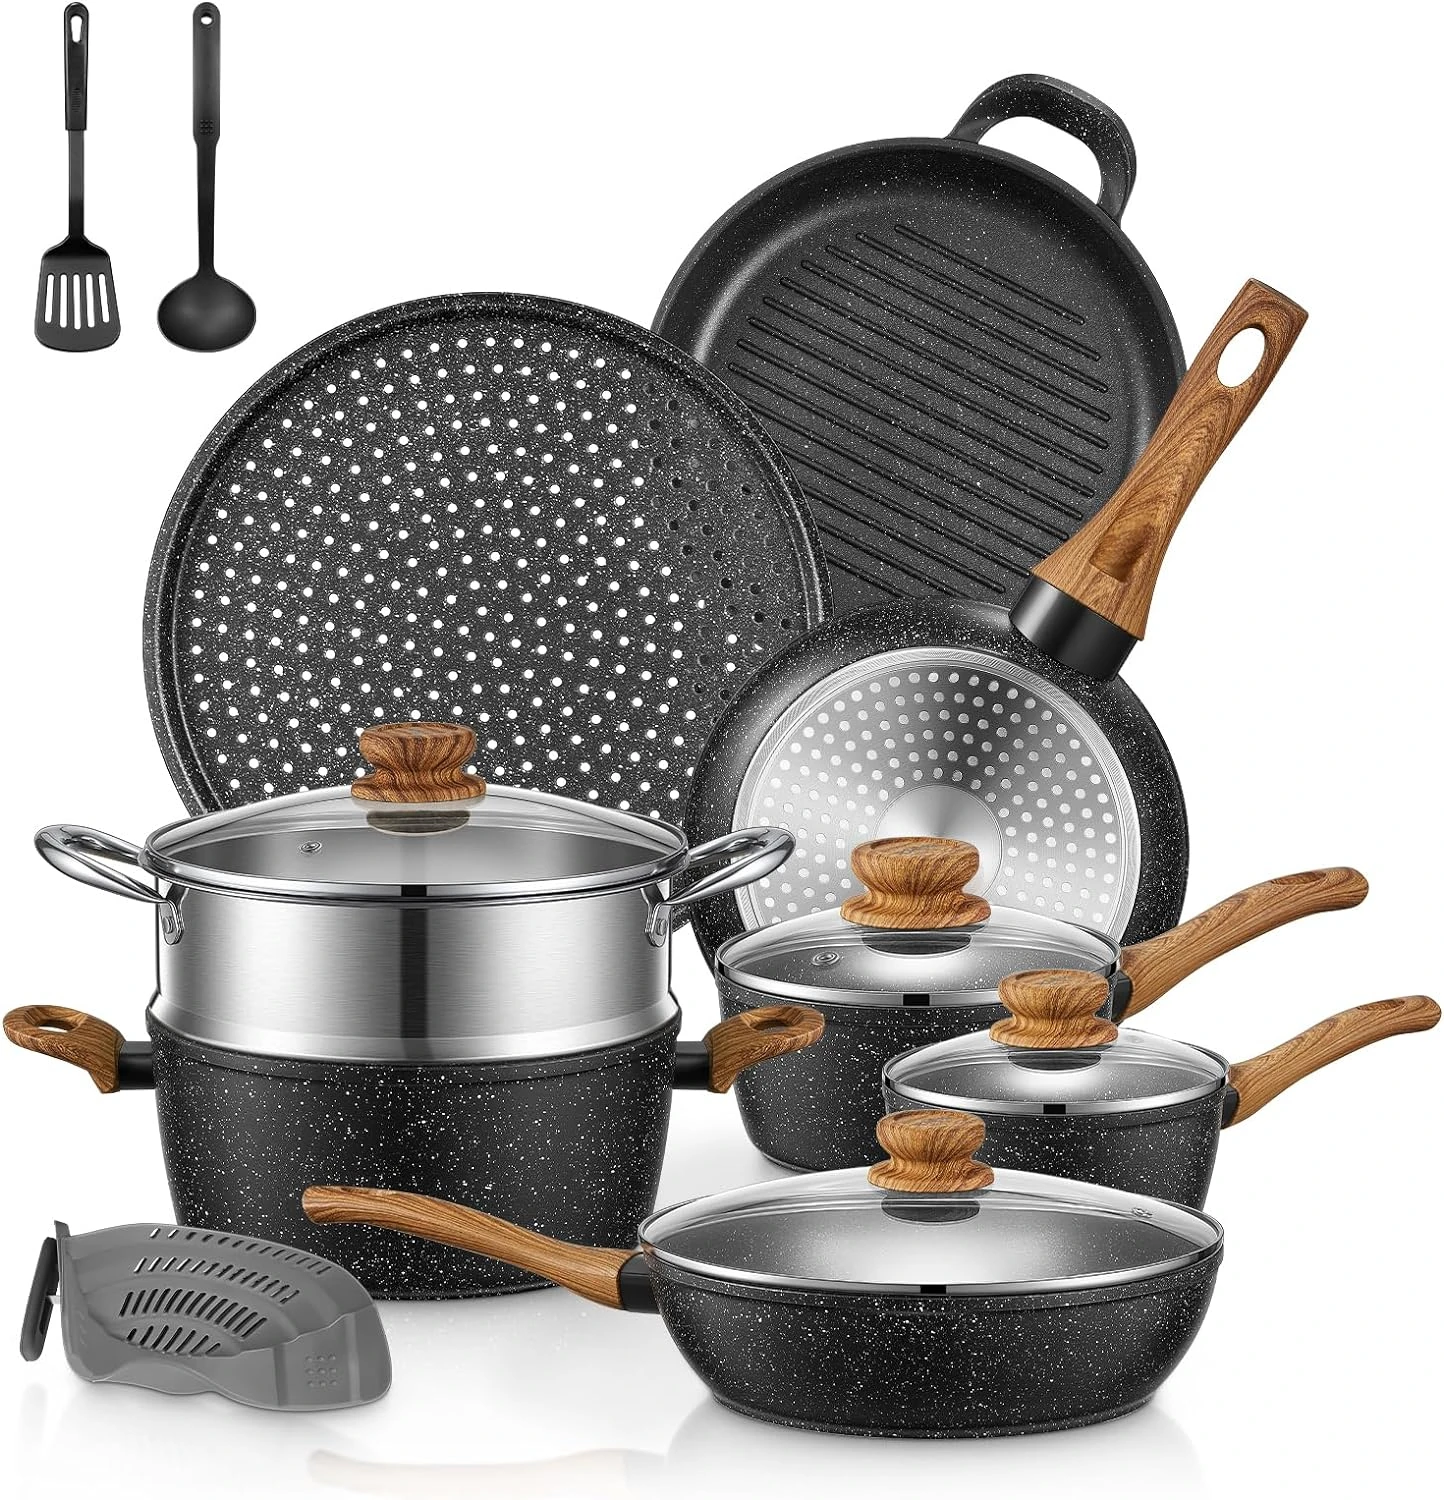 

Pots and Pans Set with Lids 15 PCS, Aluminum Nonstick Induction Cookware Sets,w/Frying Pans, Saucepans, Stock Pot, Pizza Pan, Gr